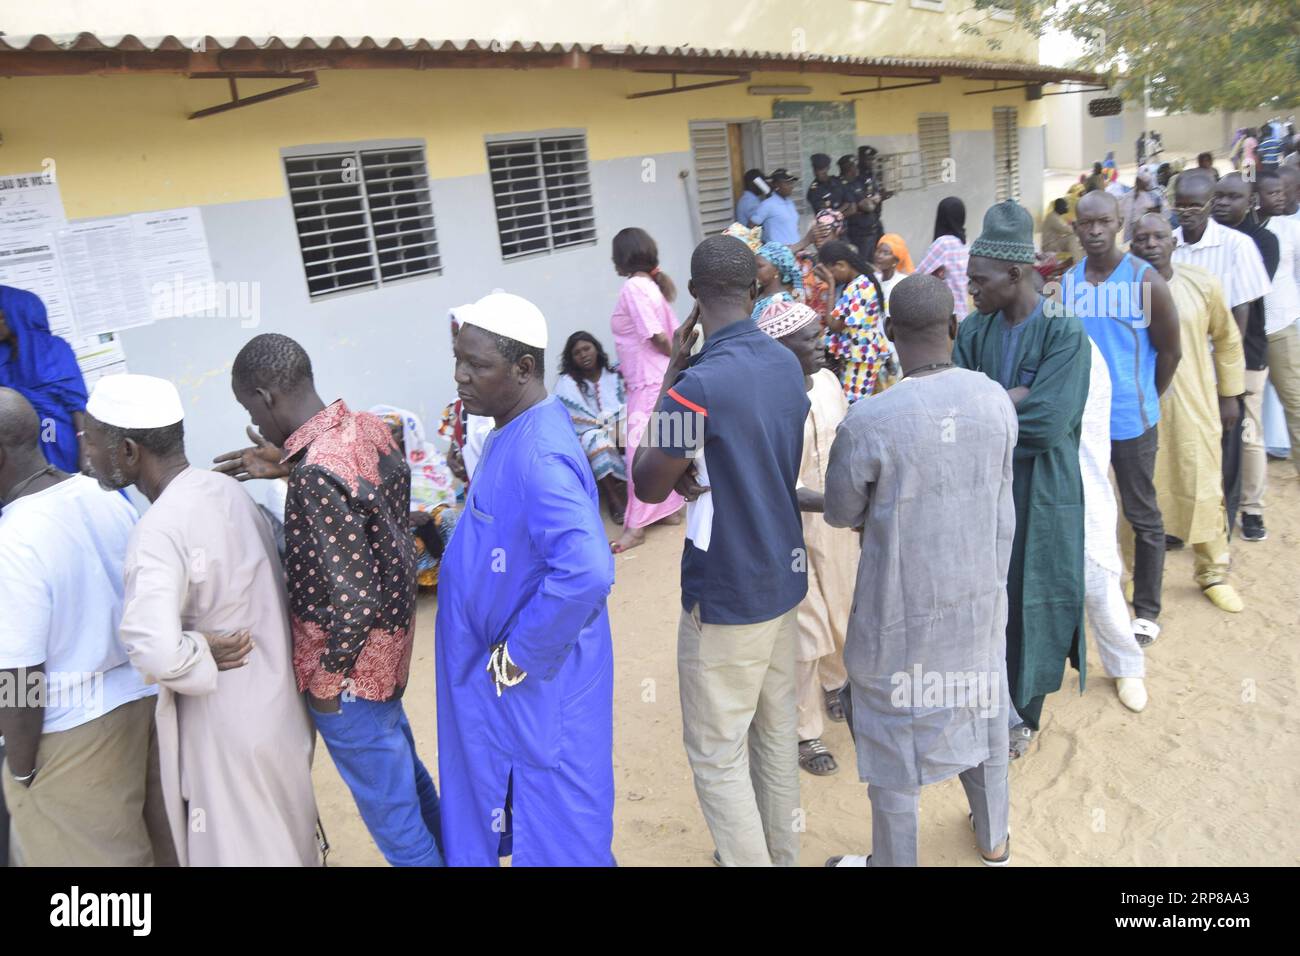 (190224) -- DAKAR, 24 février 2019 (Xinhua) -- des électeurs attendent devant un bureau de vote pour voter à Fatick, Sénégal, le 24 février 2019. L'élection présidentielle sénégalaise a débuté dimanche à 08:00 h heure locale (08:00 h GMT) et 6,68 millions d'électeurs inscrits devraient voter dans tout le pays et à l'étranger. Le président sortant Macky Sall, l'ancien Premier ministre Idrissa Seck, l'ancien ministre des Affaires étrangères Madicke Niang, l'académicien Issa Fall et l'ancien inspecteur des impôts Ousmane Sonko se disputent le siège présidentiel. Seck est considéré par les médias locaux comme le principal challenger de Sall. Un total de 15 397 Banque D'Images